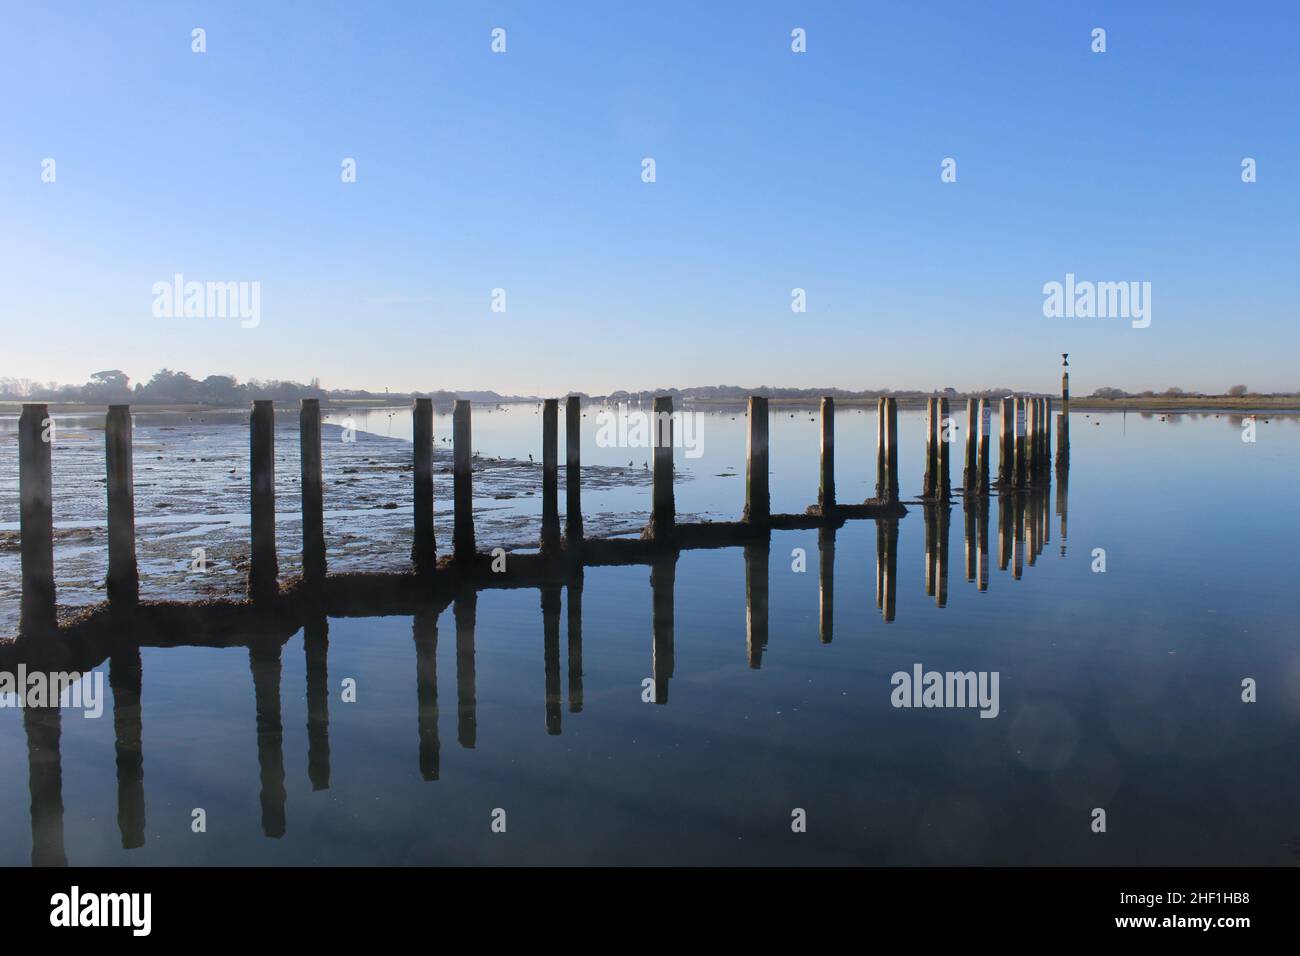 Anlegestellen am Bosham Quay spiegeln sich in den stillen Gewässern wider. Leeren Sie den blauen Himmel, um Text hinzuzufügen. Stockfoto